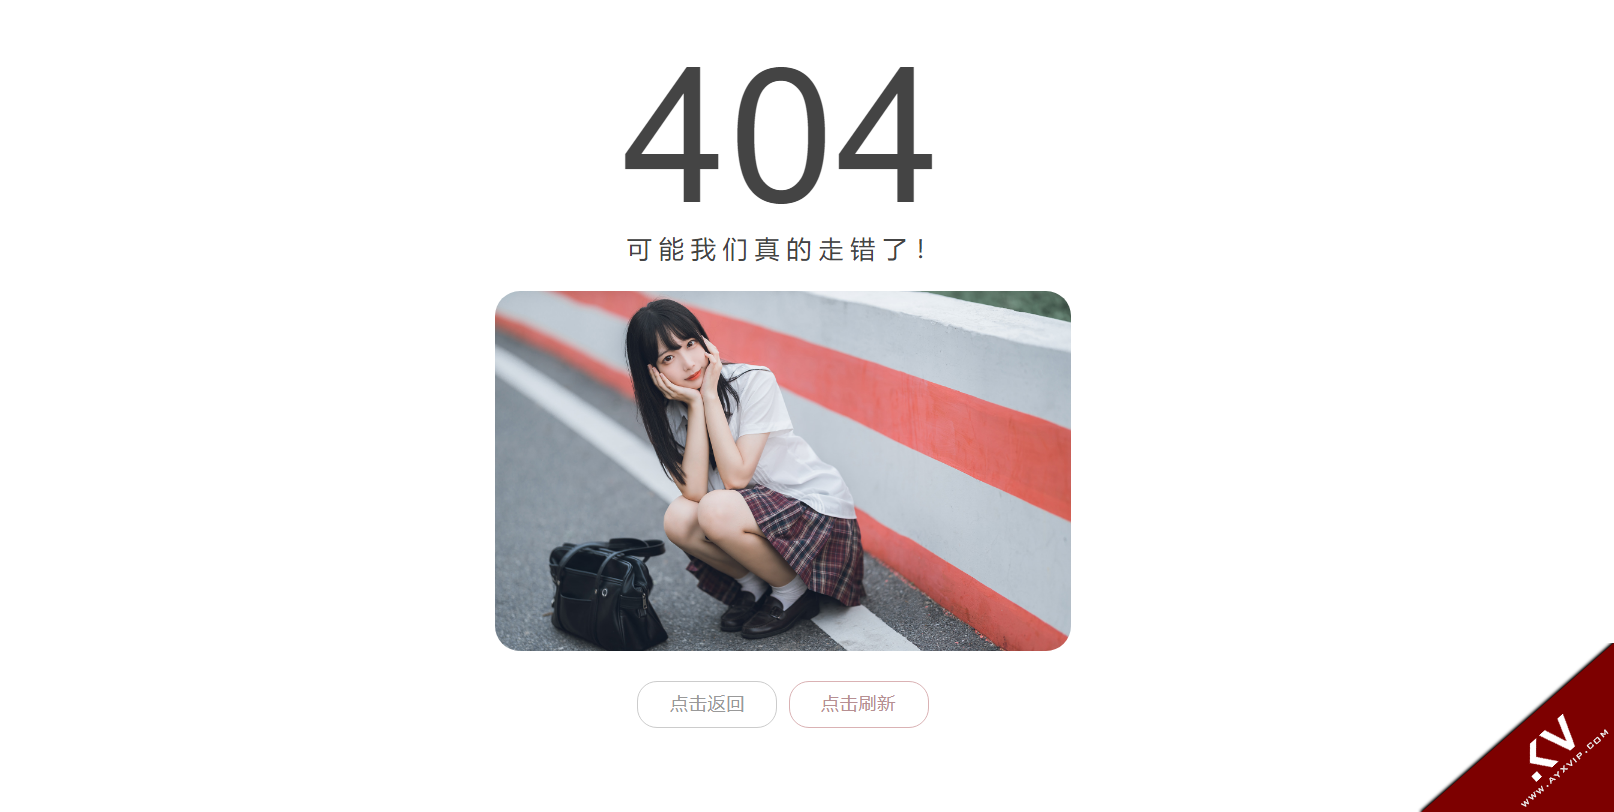 404错误代码页面 调用自动获取小姐姐图片 程序源码 图1张